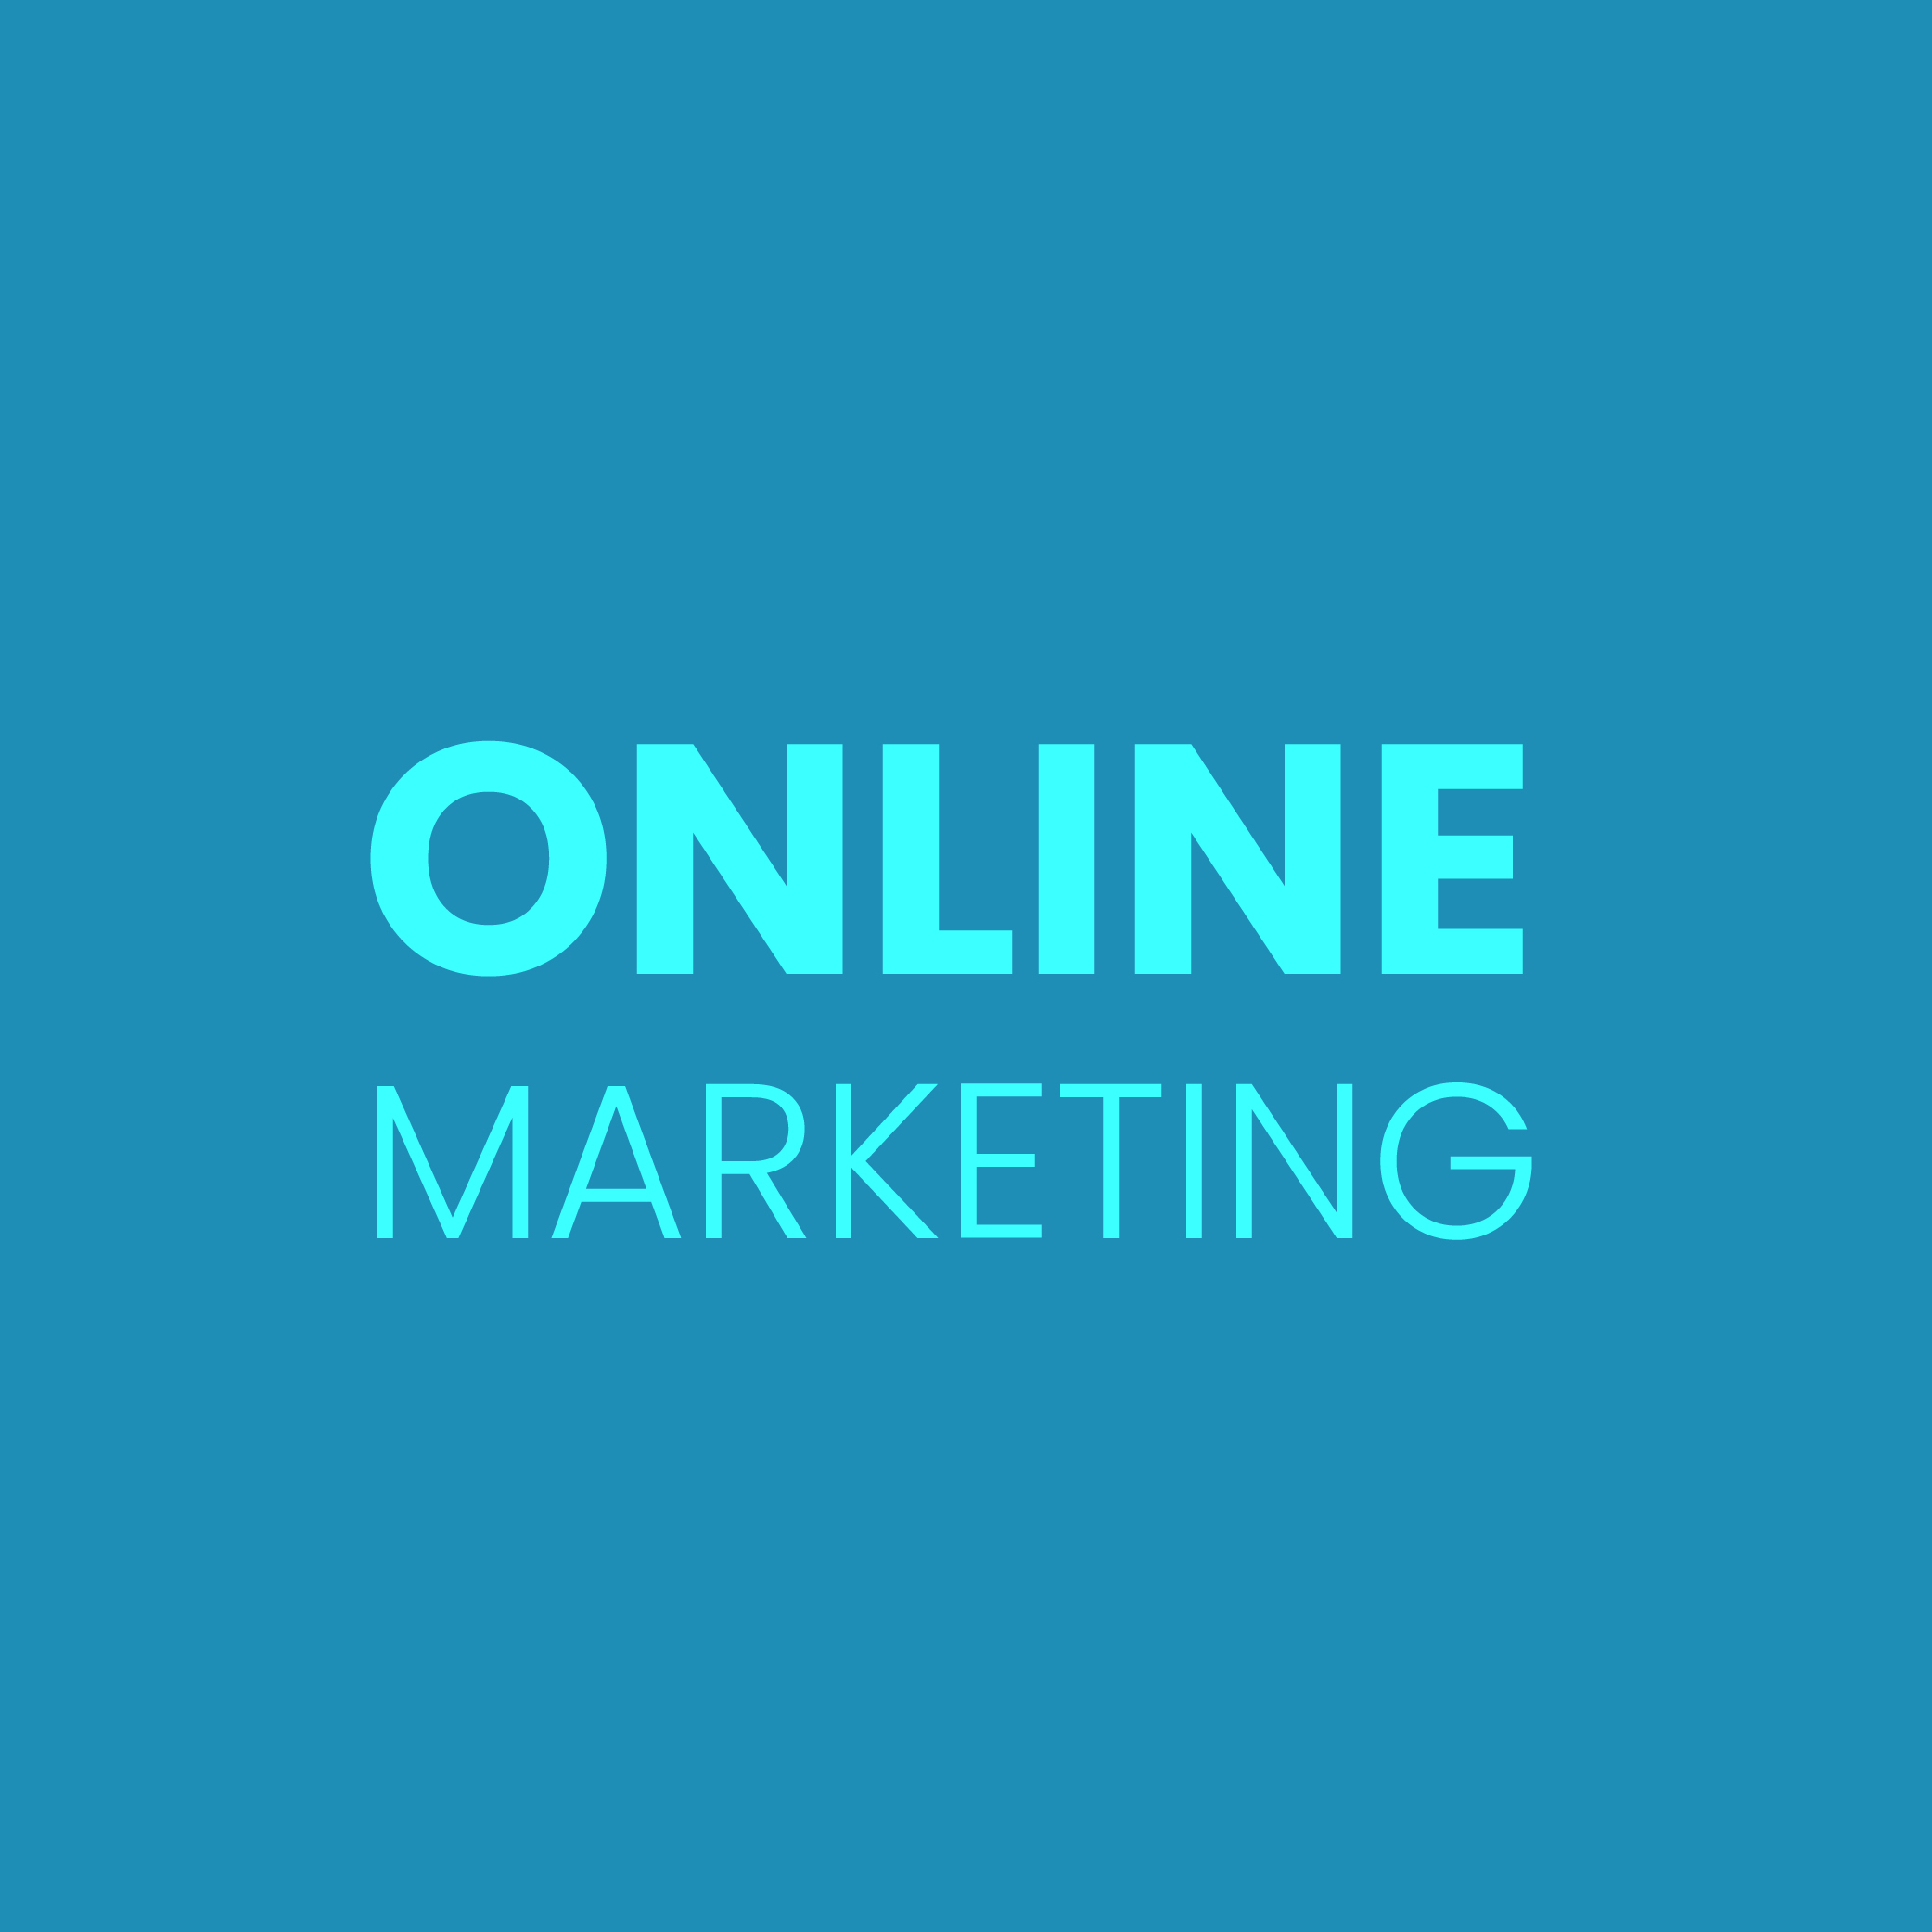 Blaue Kachel mit blauer Aufschrift "Online Marketing"